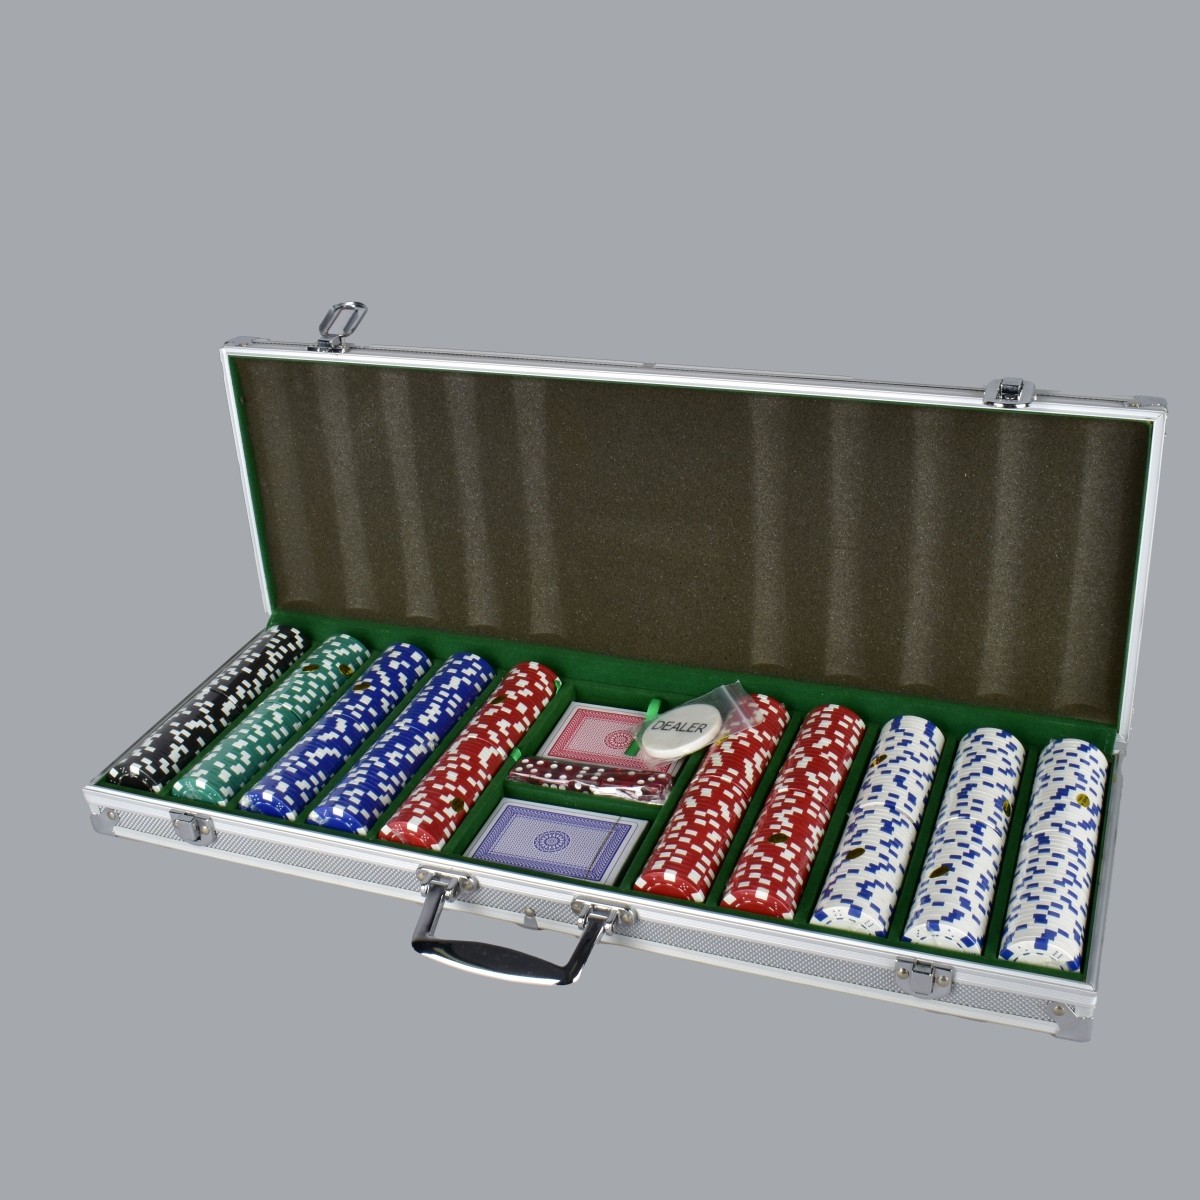 Poker Set with Aluminum Case